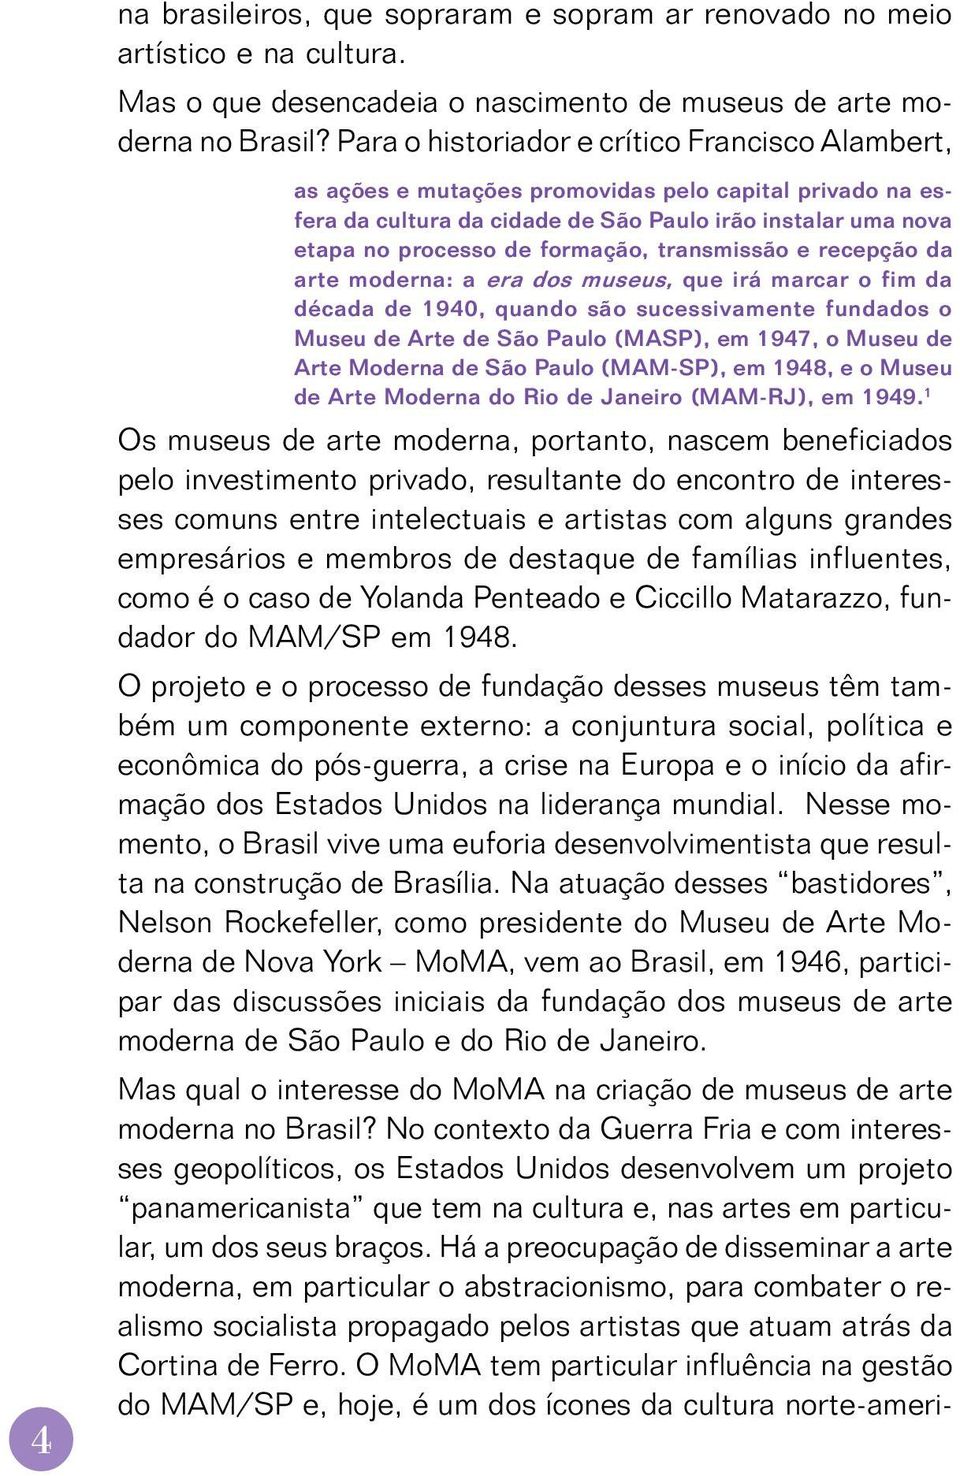 transmissão e recepção da arte moderna: a era dos museus, que irá marcar o fim da década de 1940, quando são sucessivamente fundados o Museu de Arte de São Paulo (MASP), em 1947, o Museu de Arte